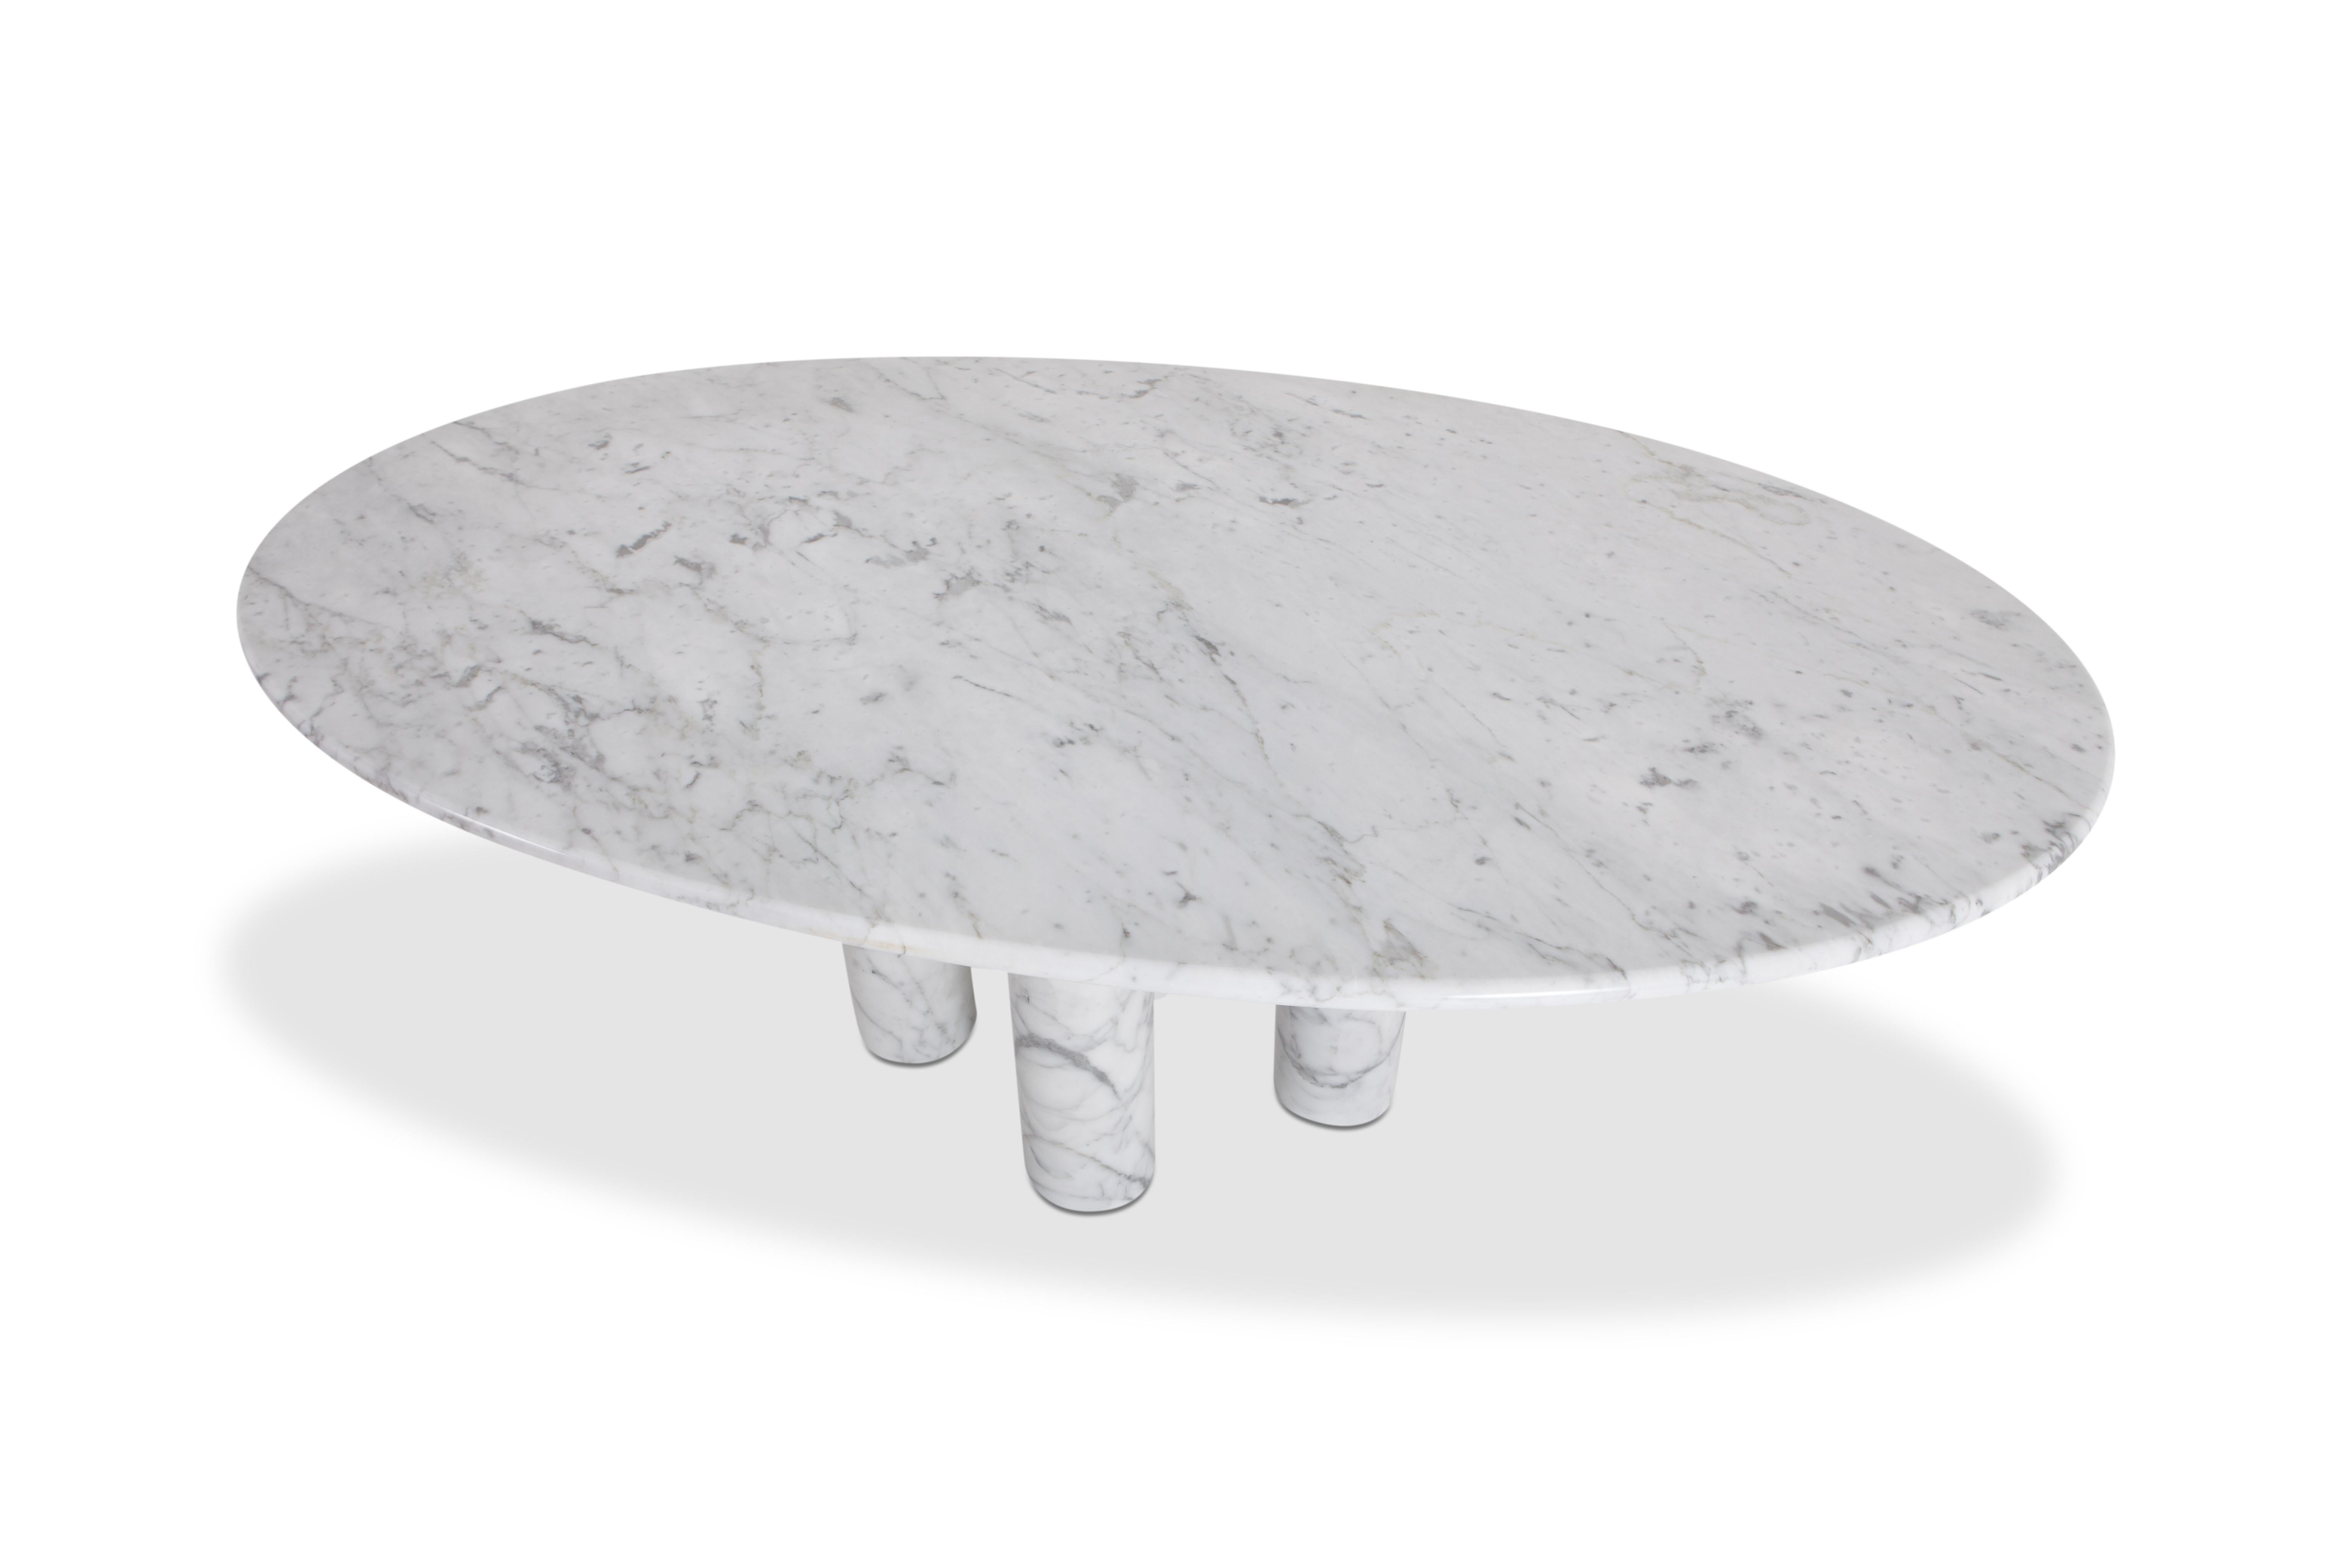 20th Century Mario Bellini Il Colonnata Oval Dining Table in Carrara Marble for Cassina